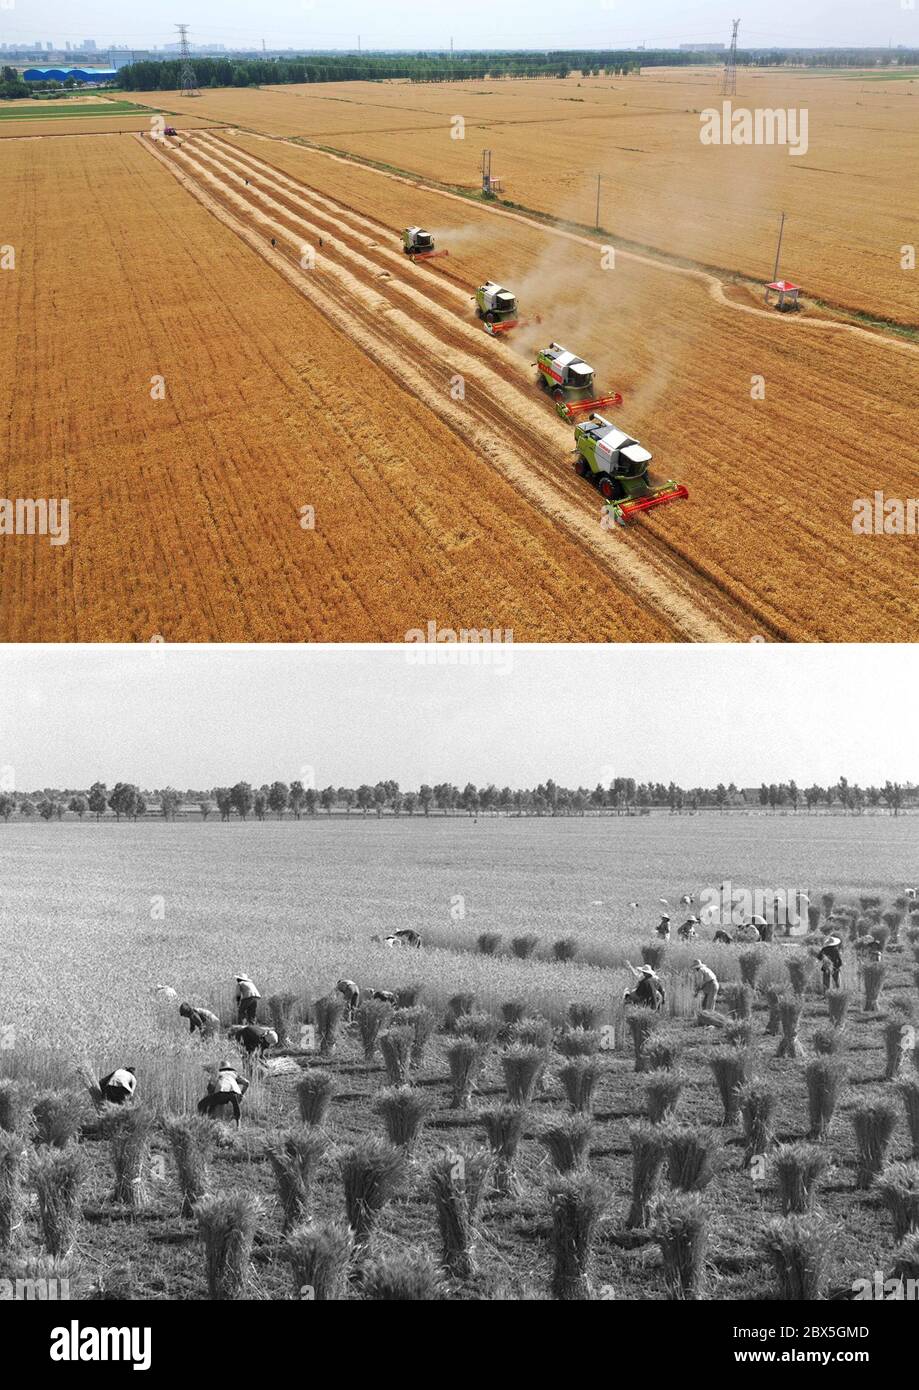 (200605) -- ZHENGZHOU, 5 juin 2020 (Xinhua) -- la photo combinée montre des machines agricoles récoltant du blé dans le champ du village d'Anzhong, ville de Xiaoyangying, dans la ville de Dengzhou, province de Henan en Chine centrale (UP, photo aérienne prise le 26 mai 2020 par Feng Dapeng), Et les agriculteurs récoltant du blé dans le comté de Dantu, dans la province de Jiangsu, en Chine orientale (en bas, photo publiée le 21 juin 1963, prise par Ding Jun). Depuis la fondation de la République populaire de Chine, le niveau de mécanisation agricole en Chine s'est constamment amélioré et la production céréalière a augmenté de façon constante. Les actions récentes et f Banque D'Images